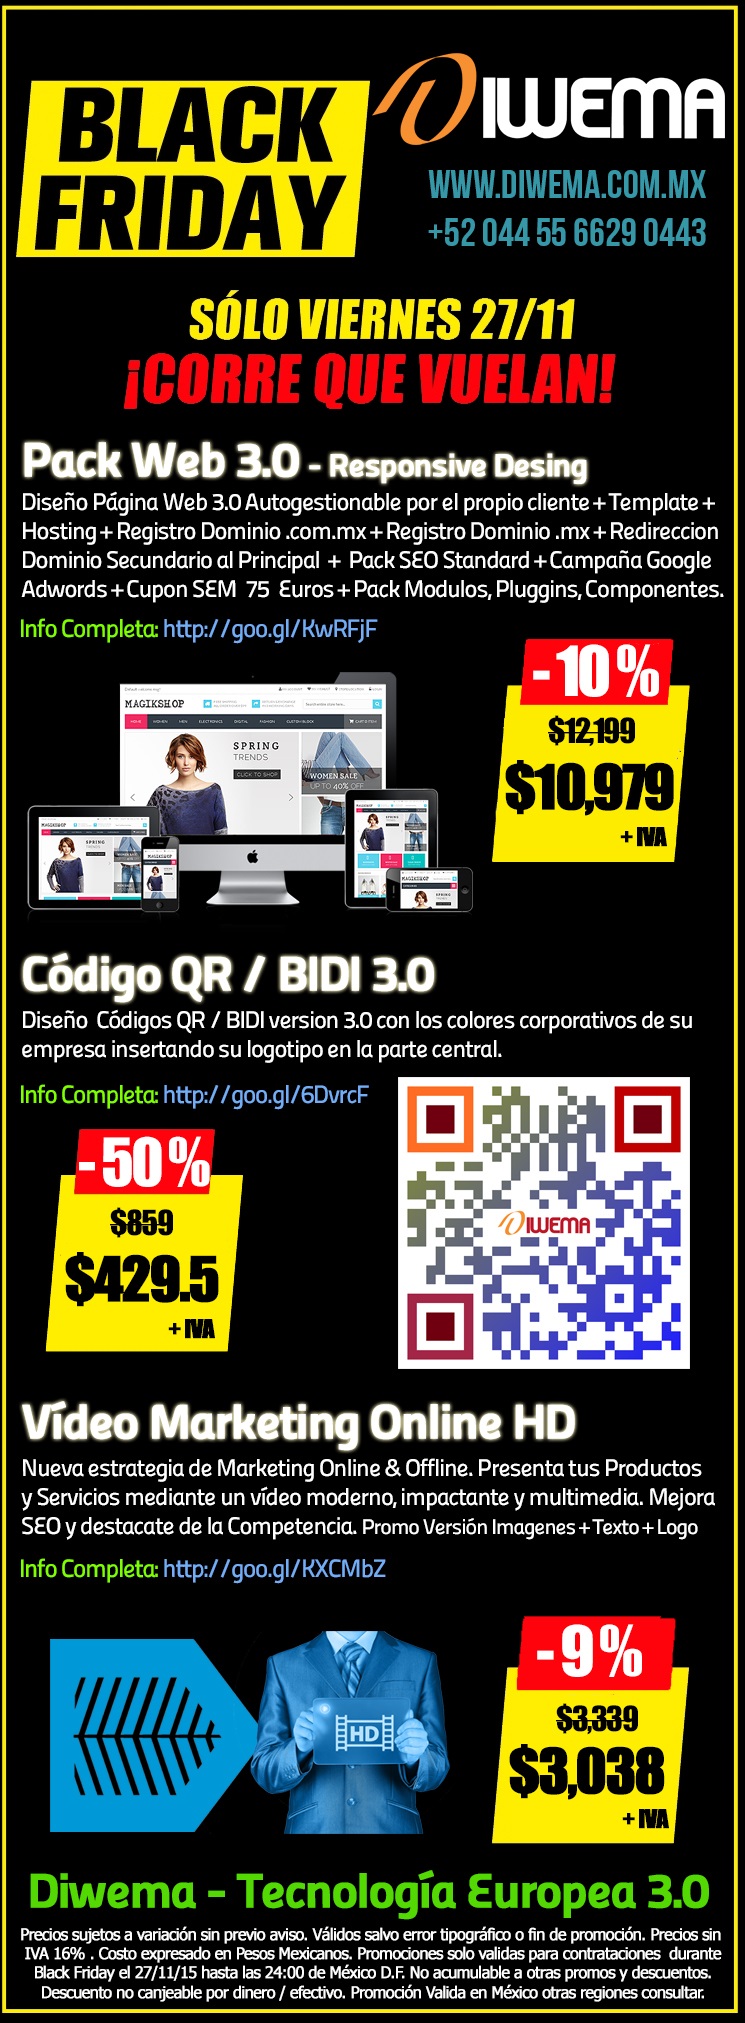 Promociones Especiales Diwema - Diseño Web, Diseño Códigos QR / BIDI, Creación Vídeo Marketing Online HD, Validas para Black Friday 27/11/2015